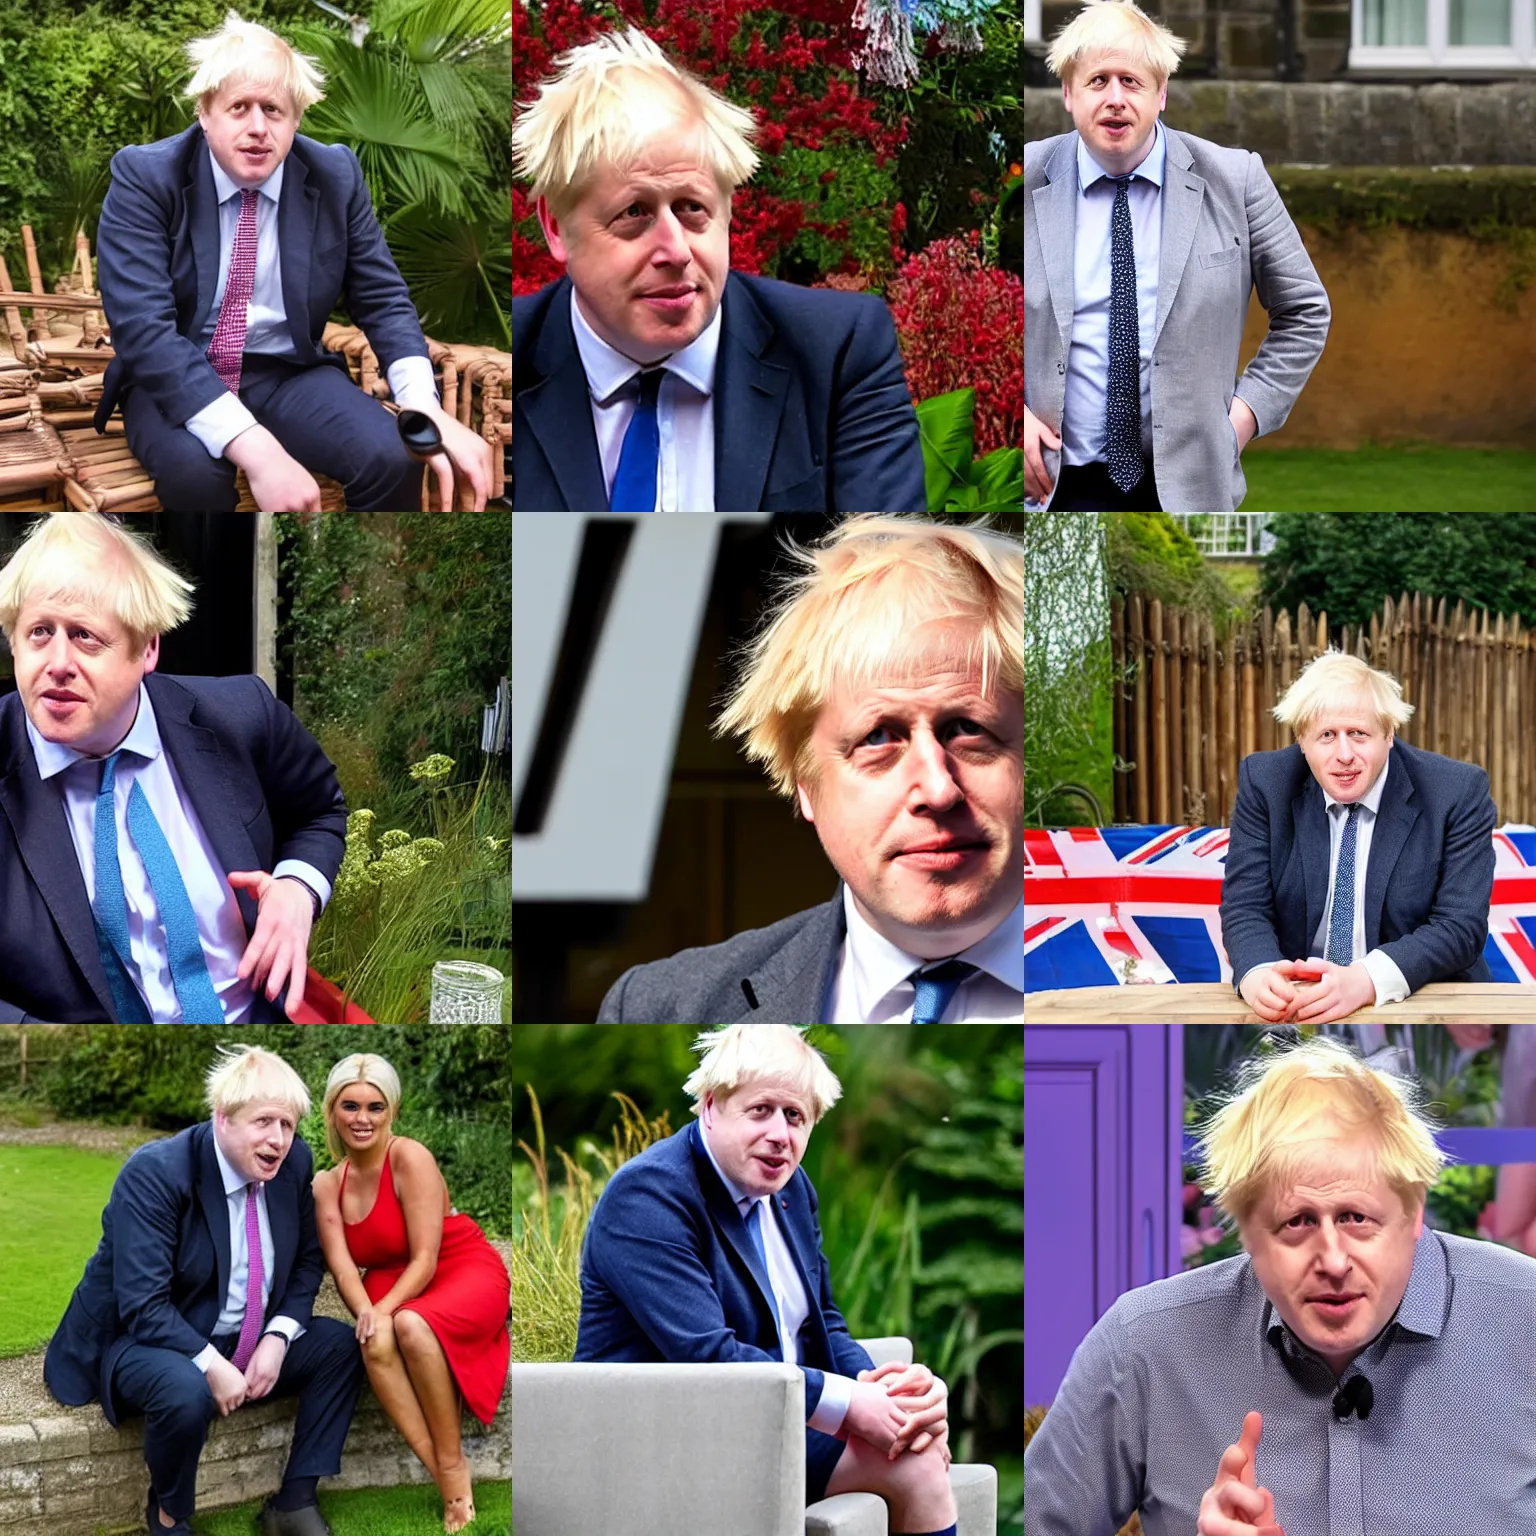 Prompt: Boris Johnson on love island